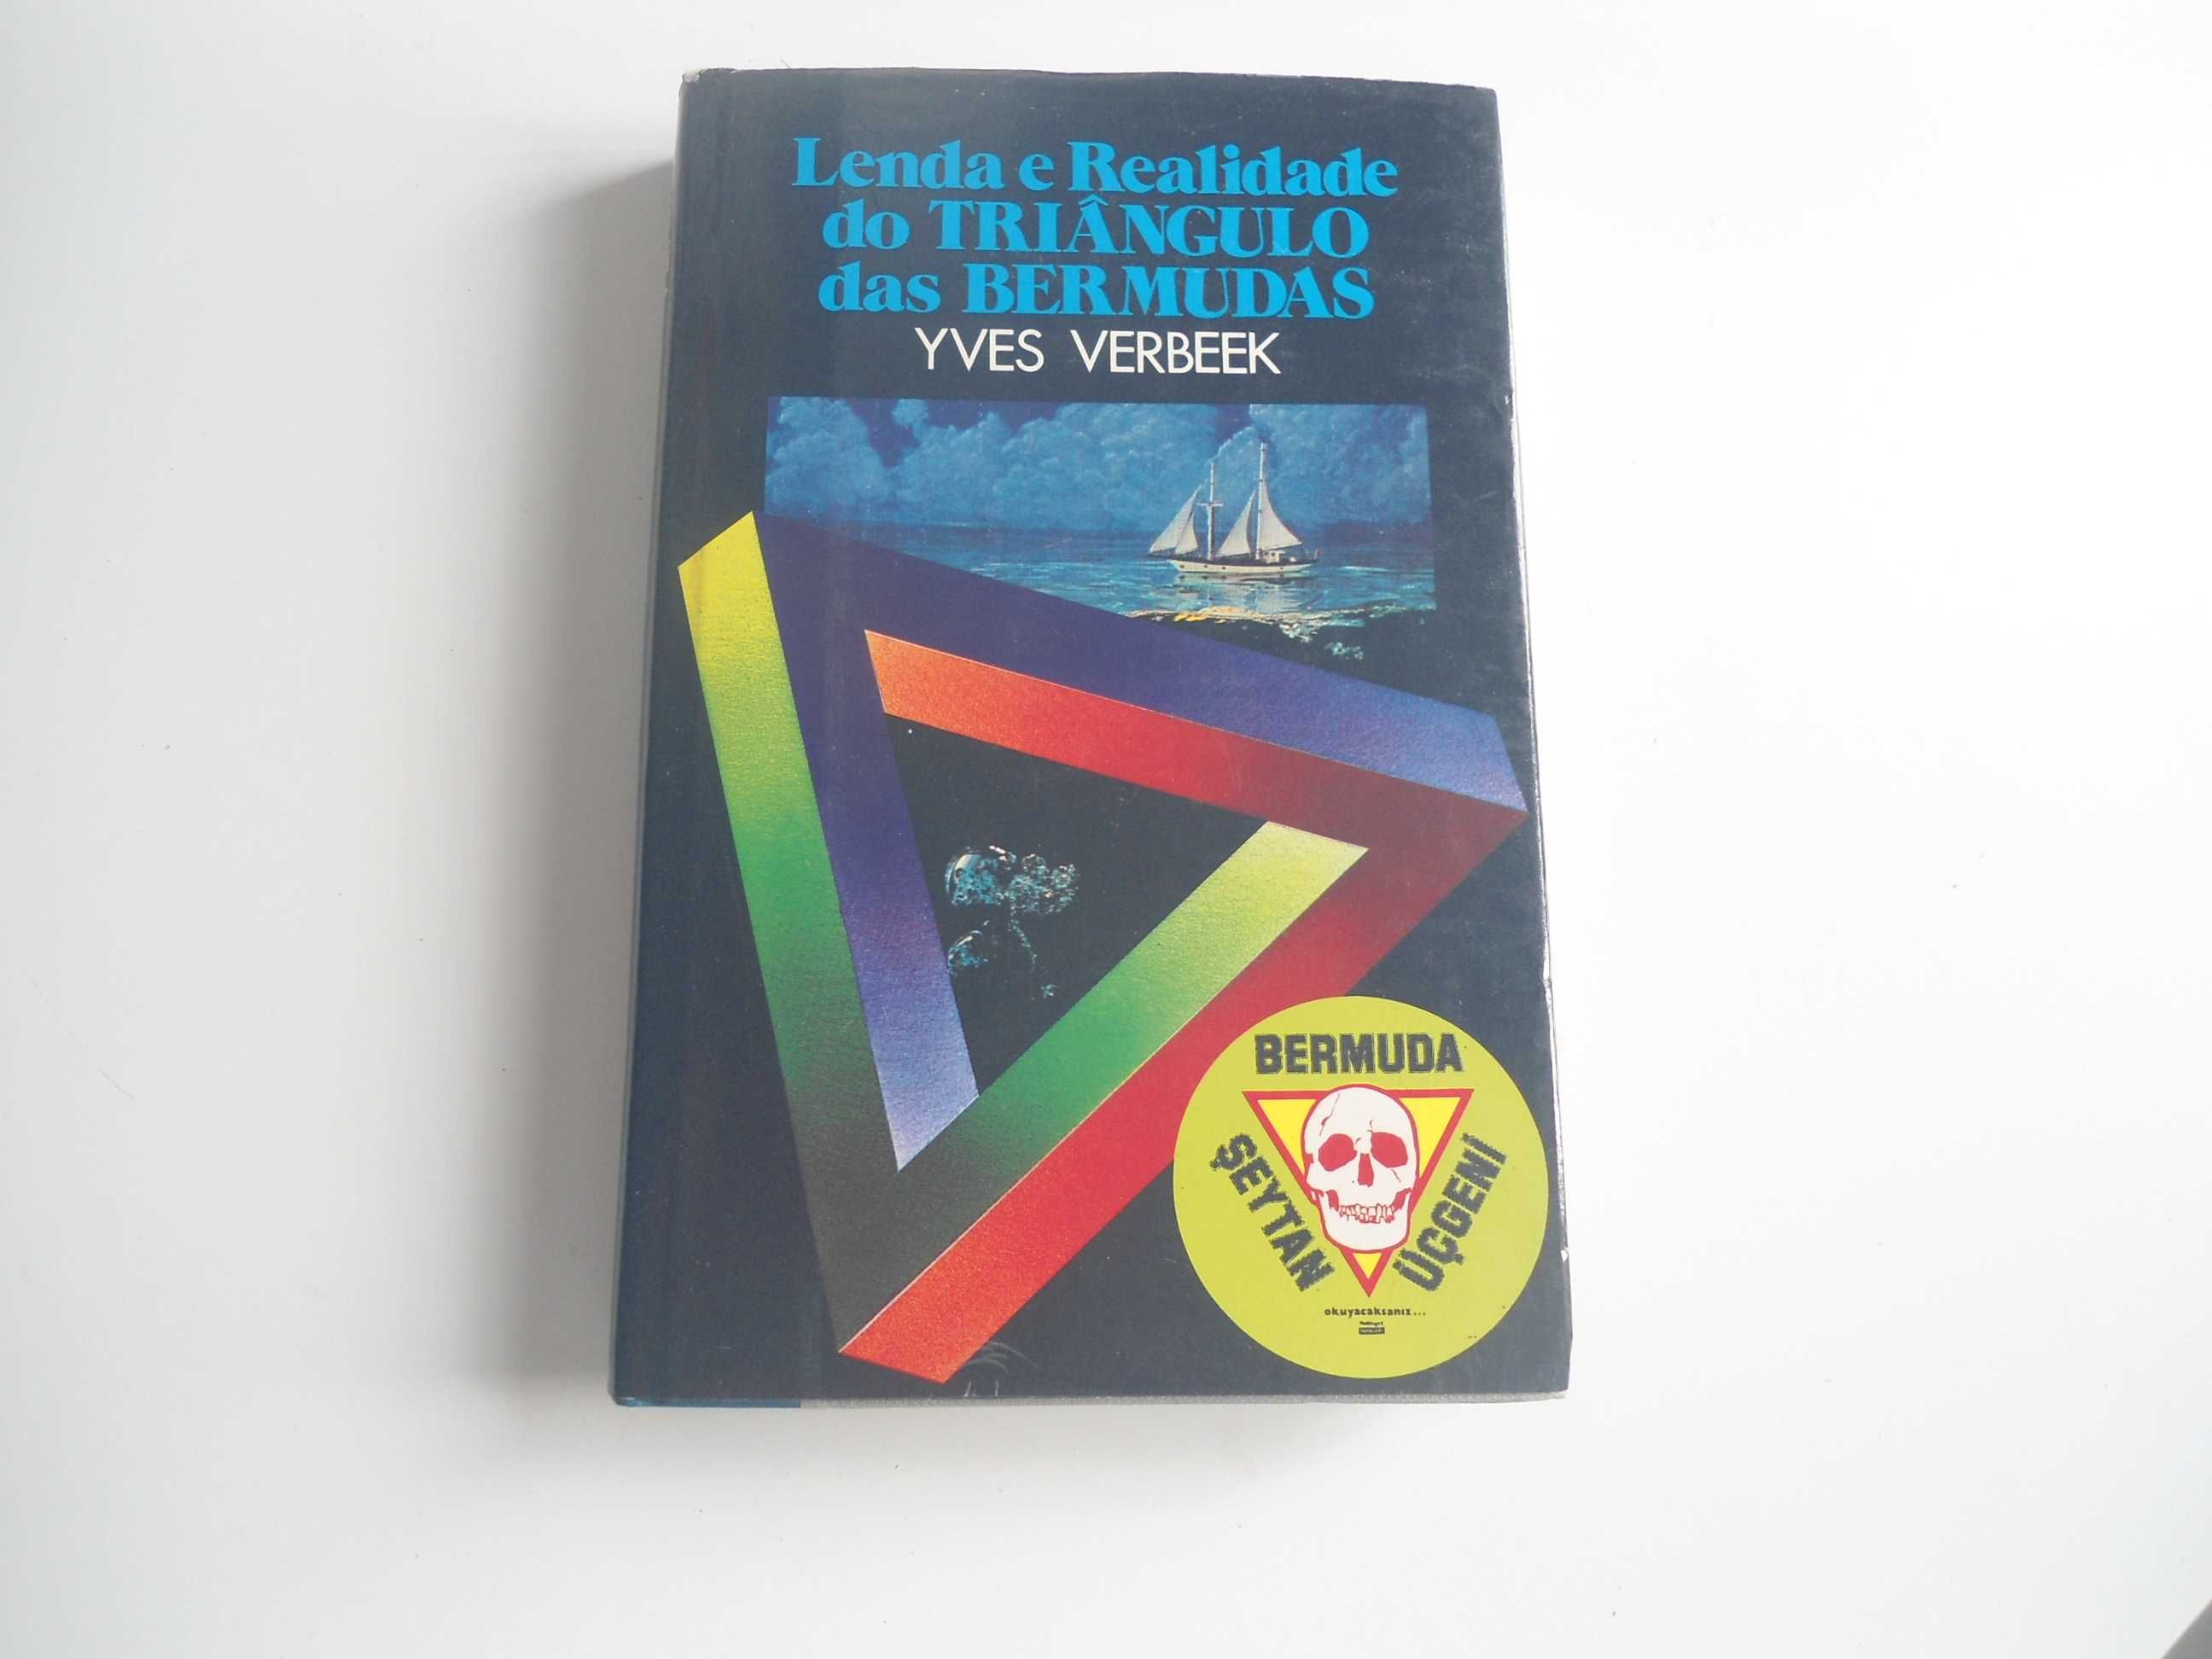 Lenda e Realidade do triângulo das Bermudas de Yves Verbeek